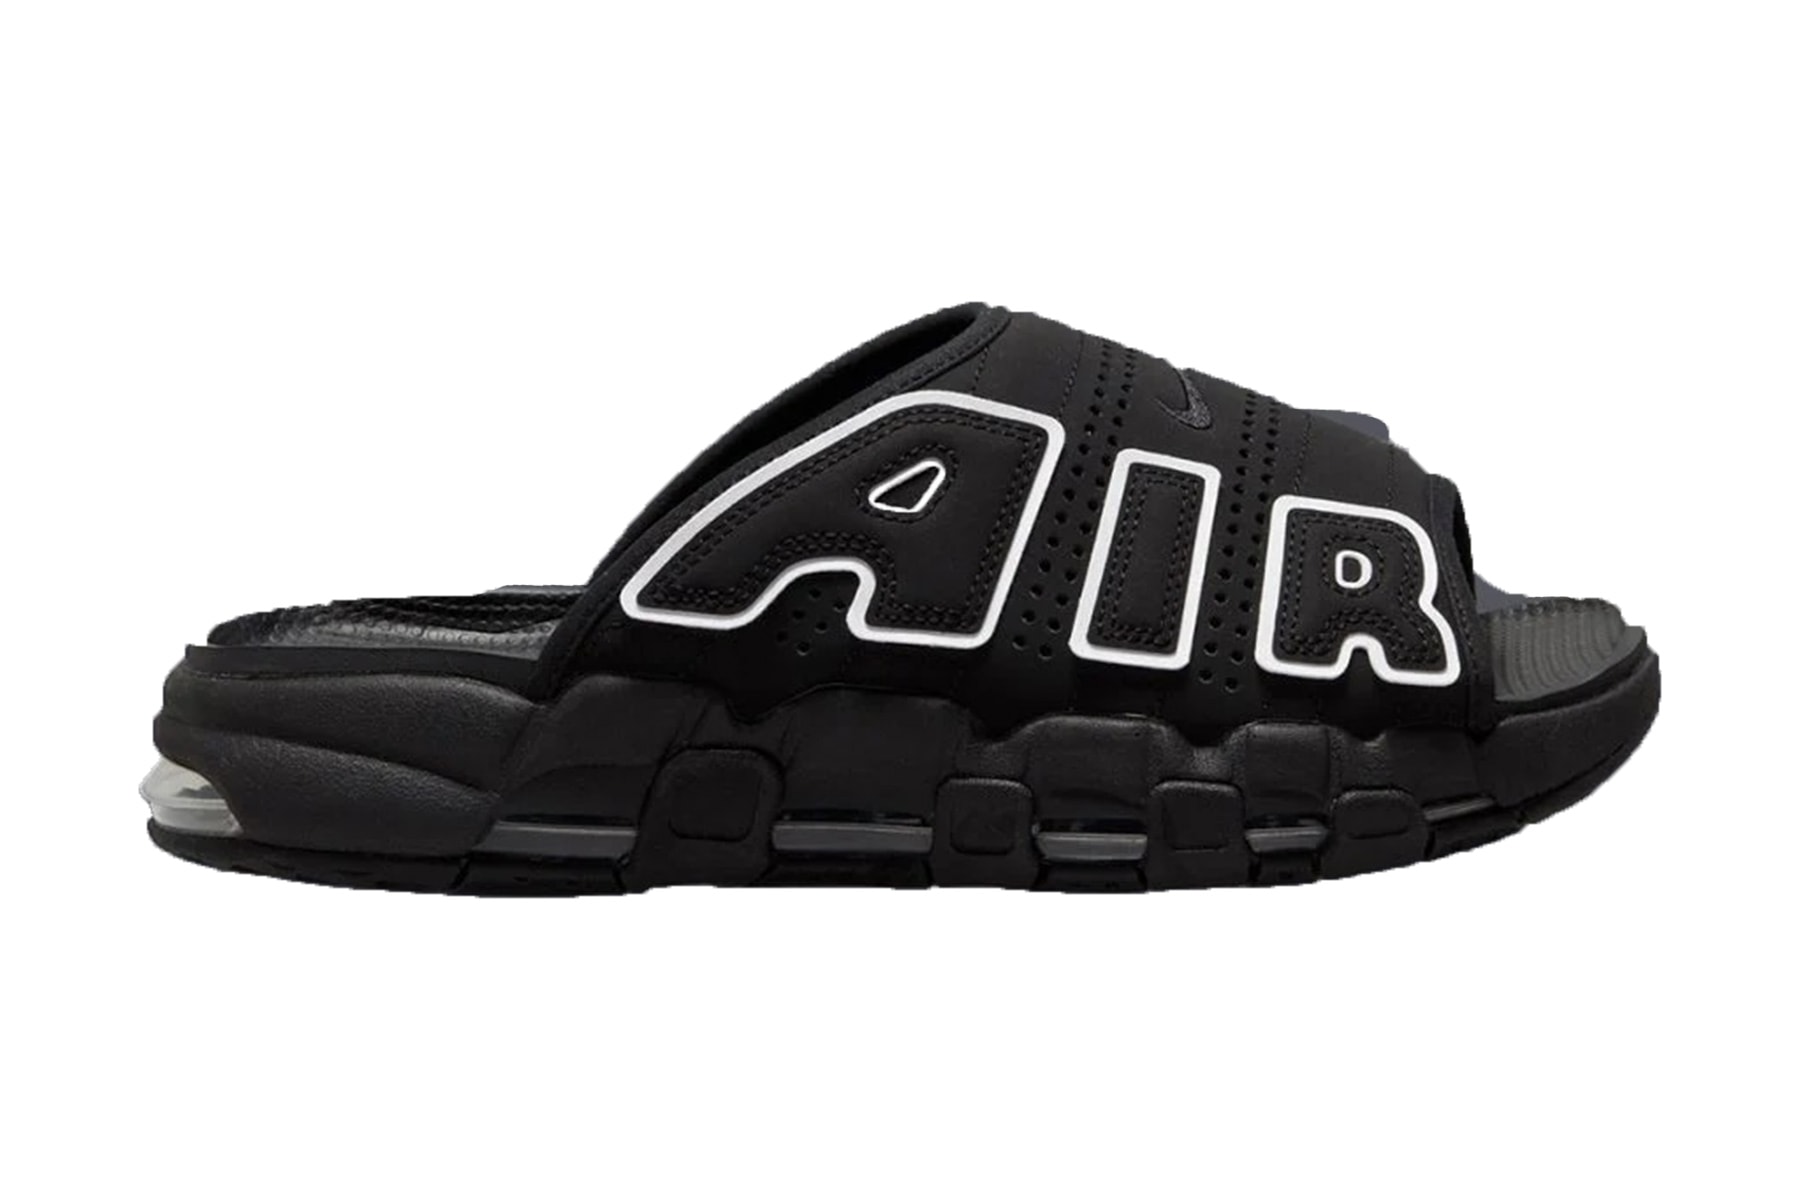 消息稱 Nike 即將推出 Air More Uptempo 全新變體拖鞋